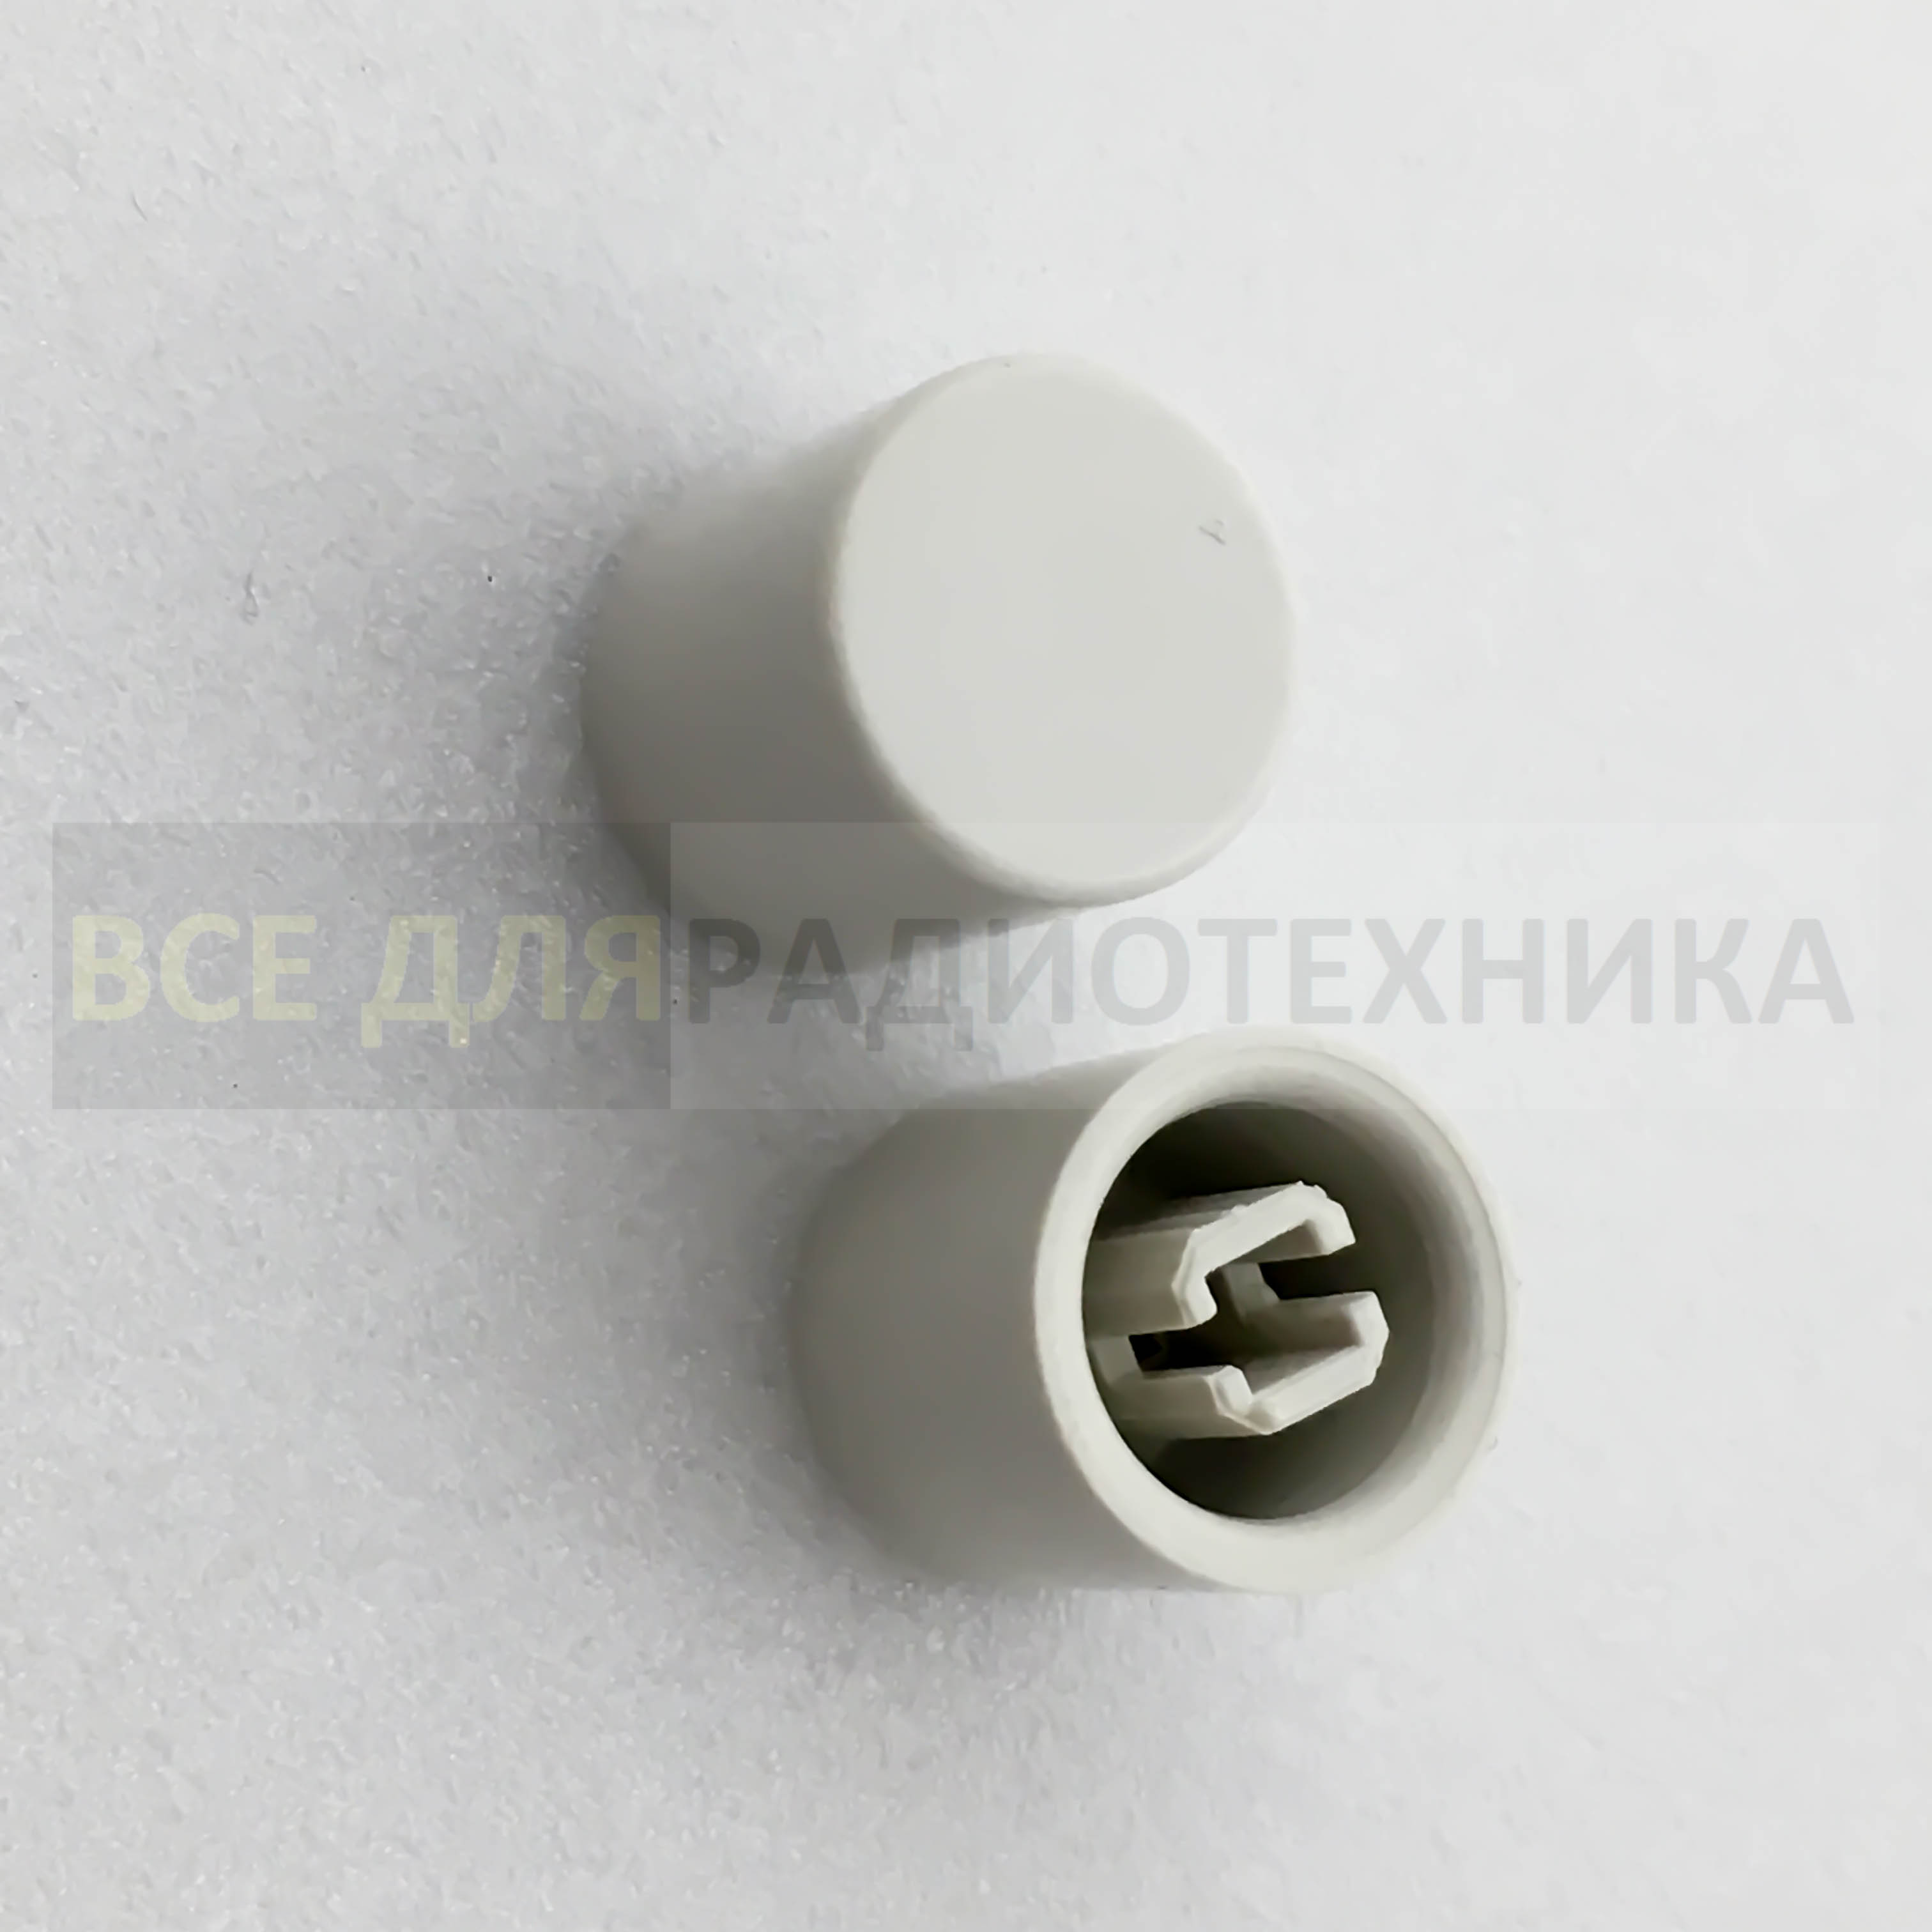 Купить Колпачок для кнопки: A26 белый в Челябинске